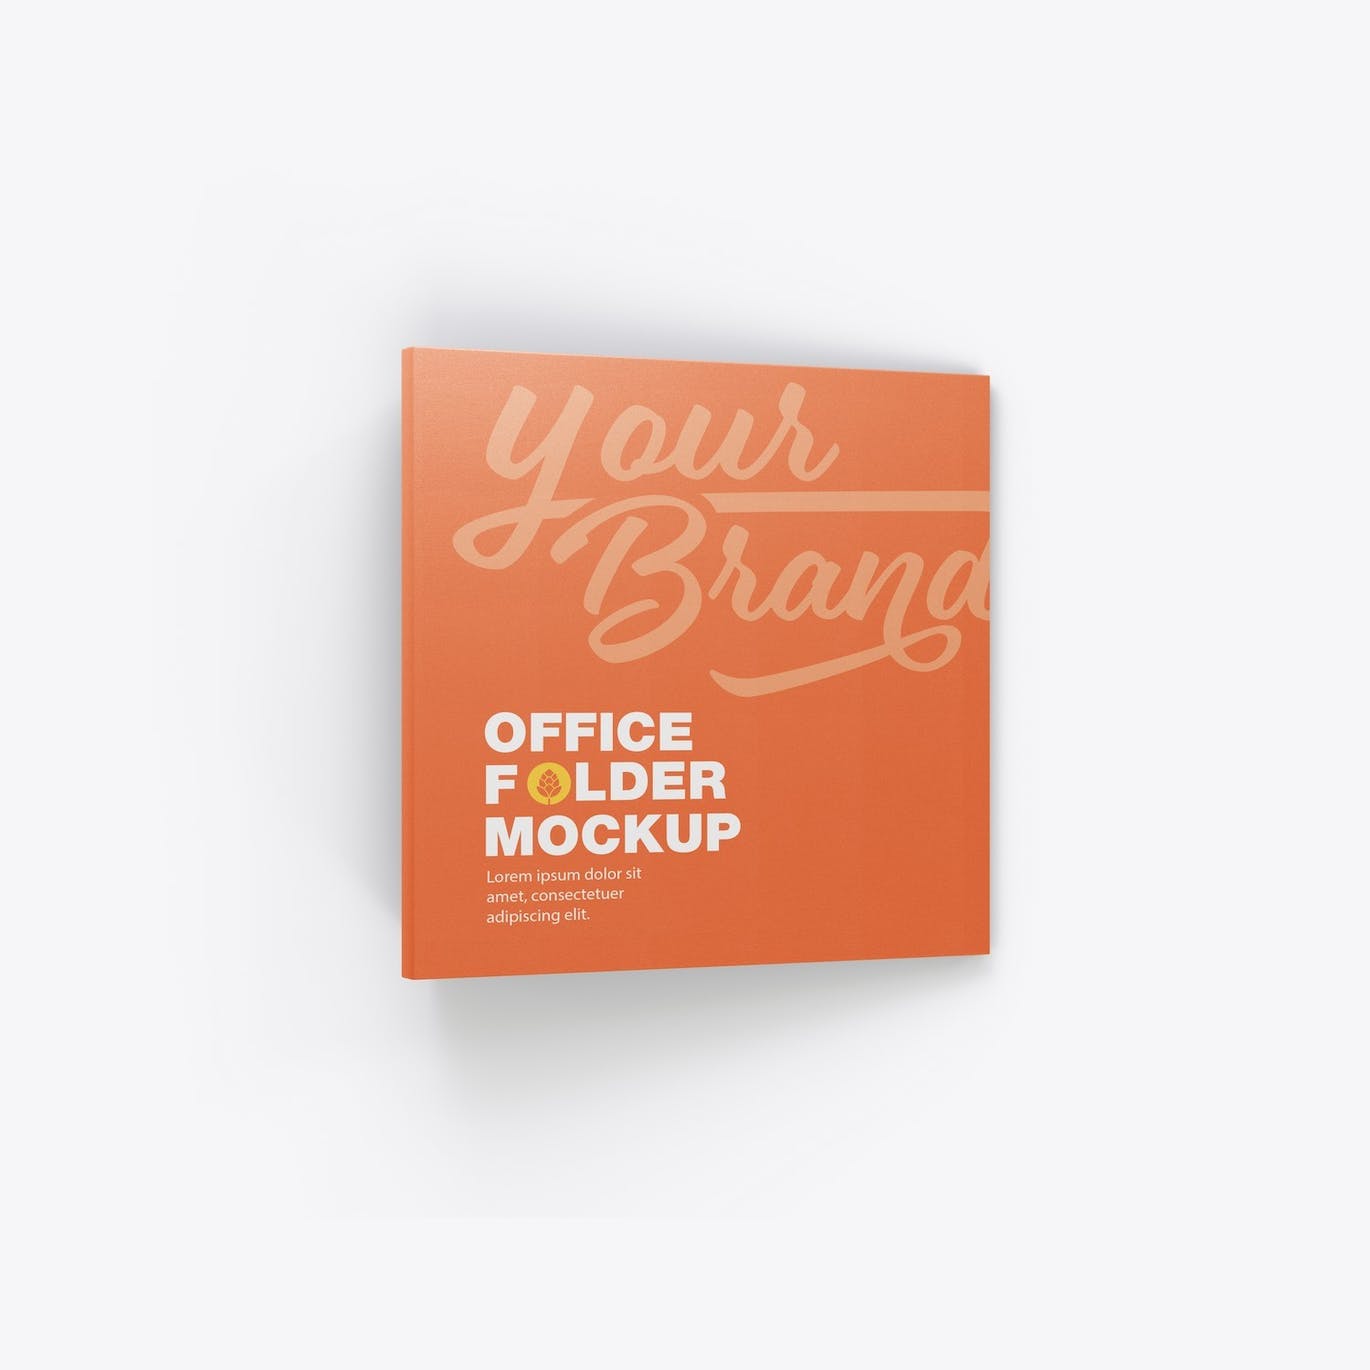 纸质办公文件夹设计样机模板 Paper Office Folder Mockup 样机素材 第11张